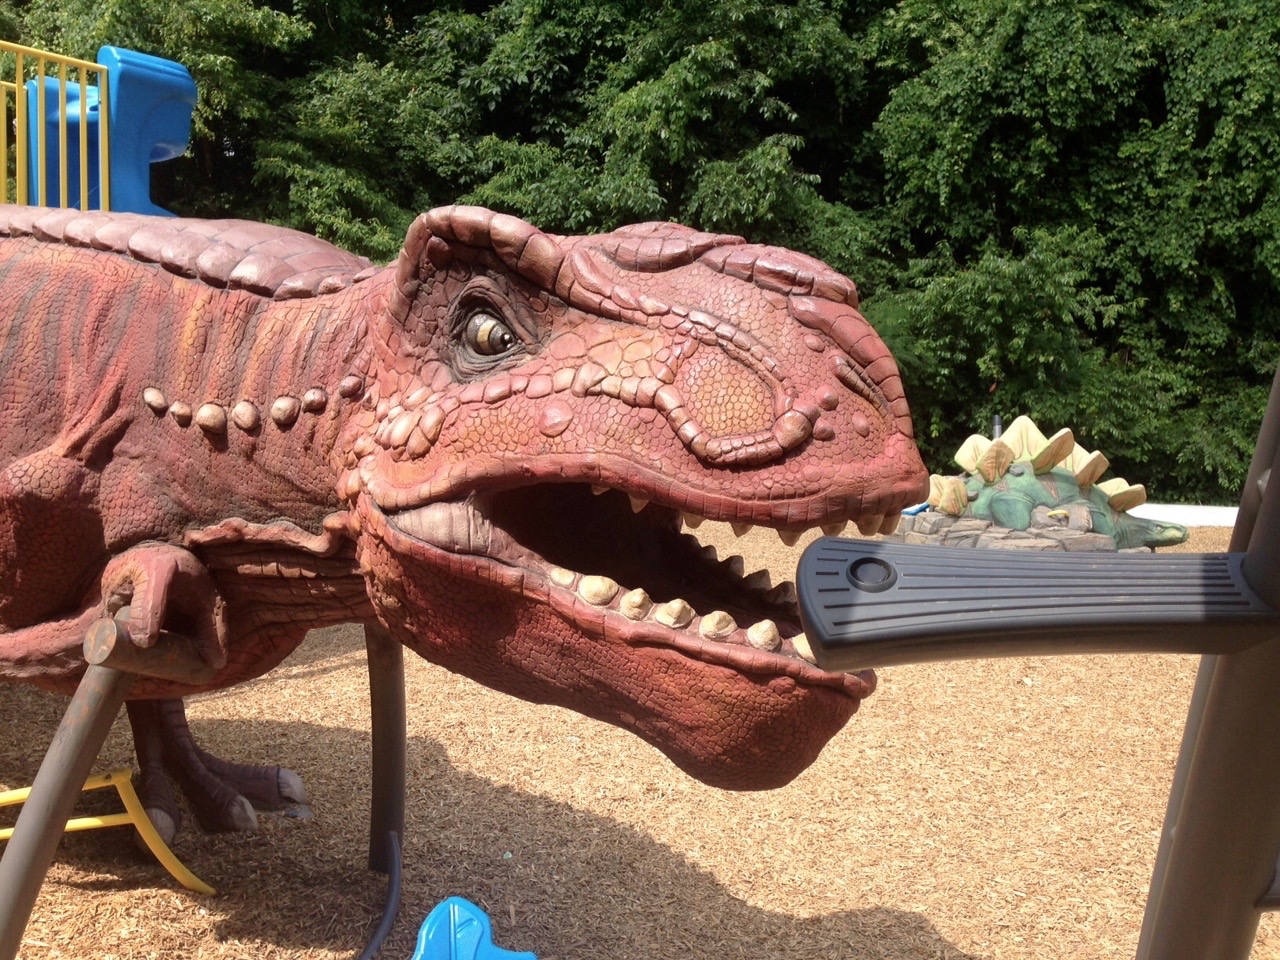 Dinosaur playground equipment